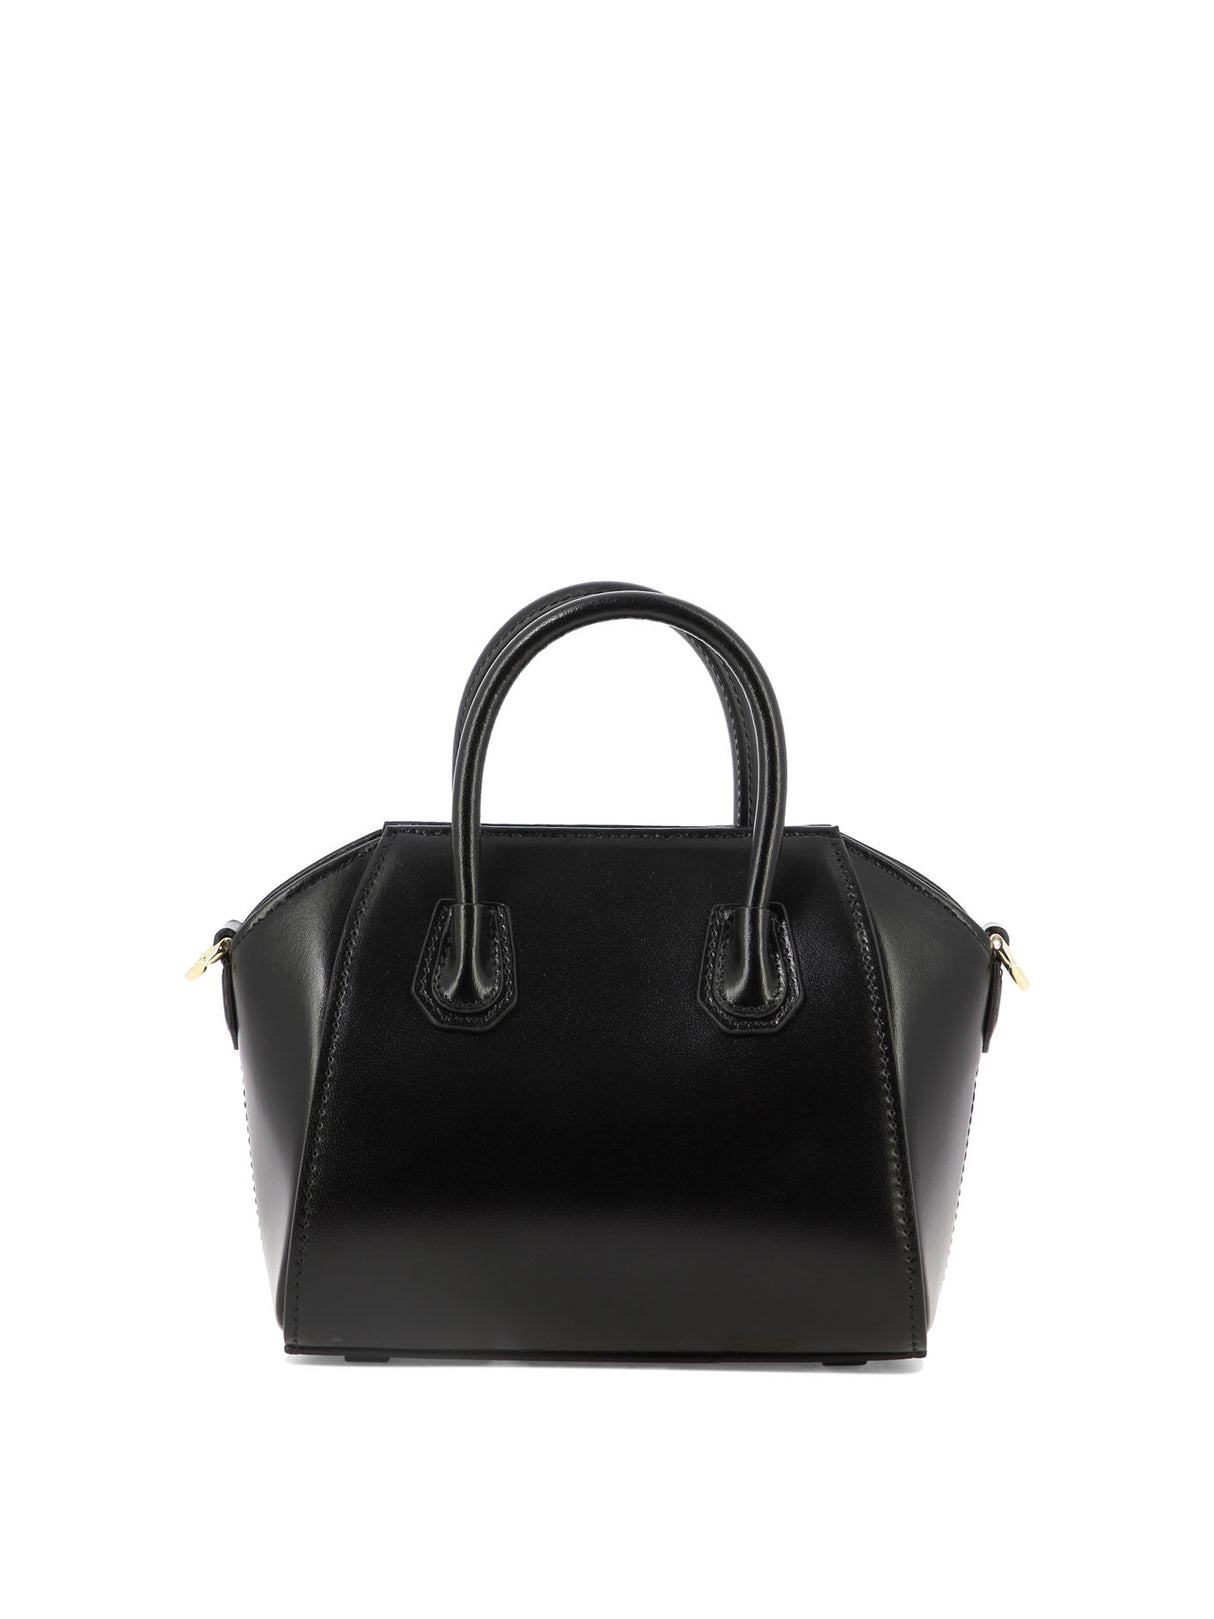 GIVENCHY Classic Black Leather Shoulder Bag